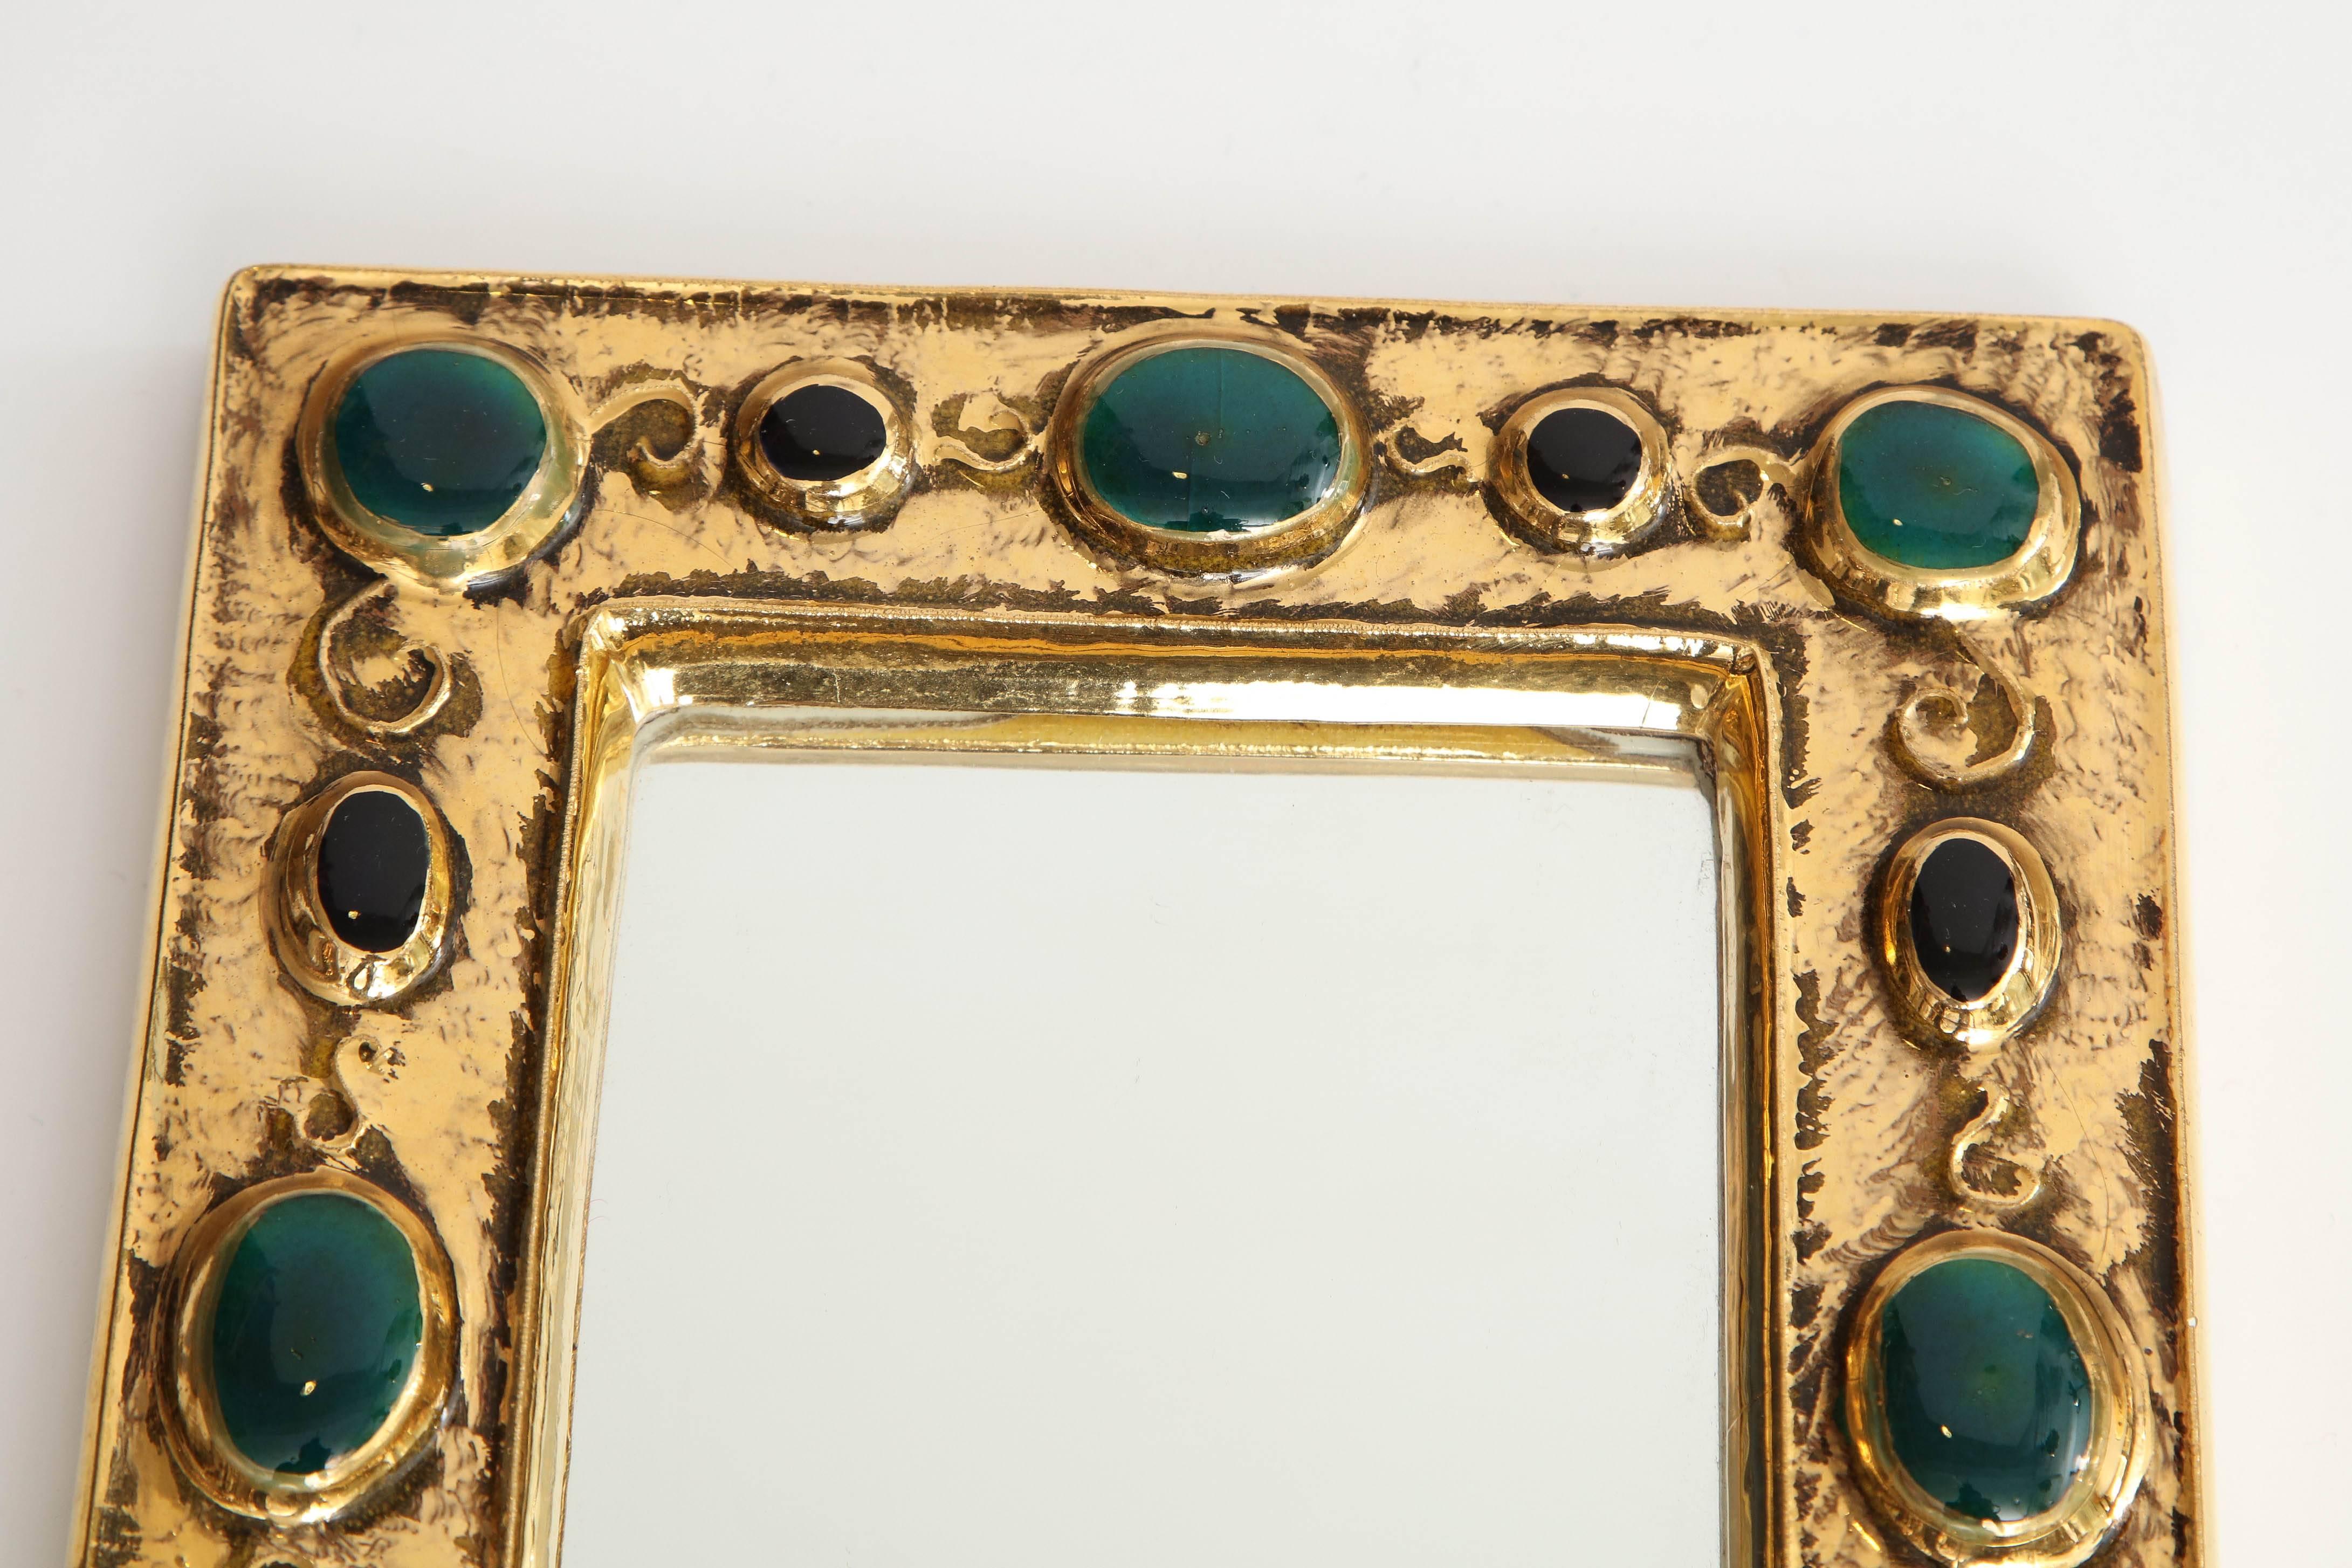 Un beau et charmant miroir conçu par l'artiste français François Lembo. Composé d'un cadre au glaçage or craquelé, le miroir présente un design de 